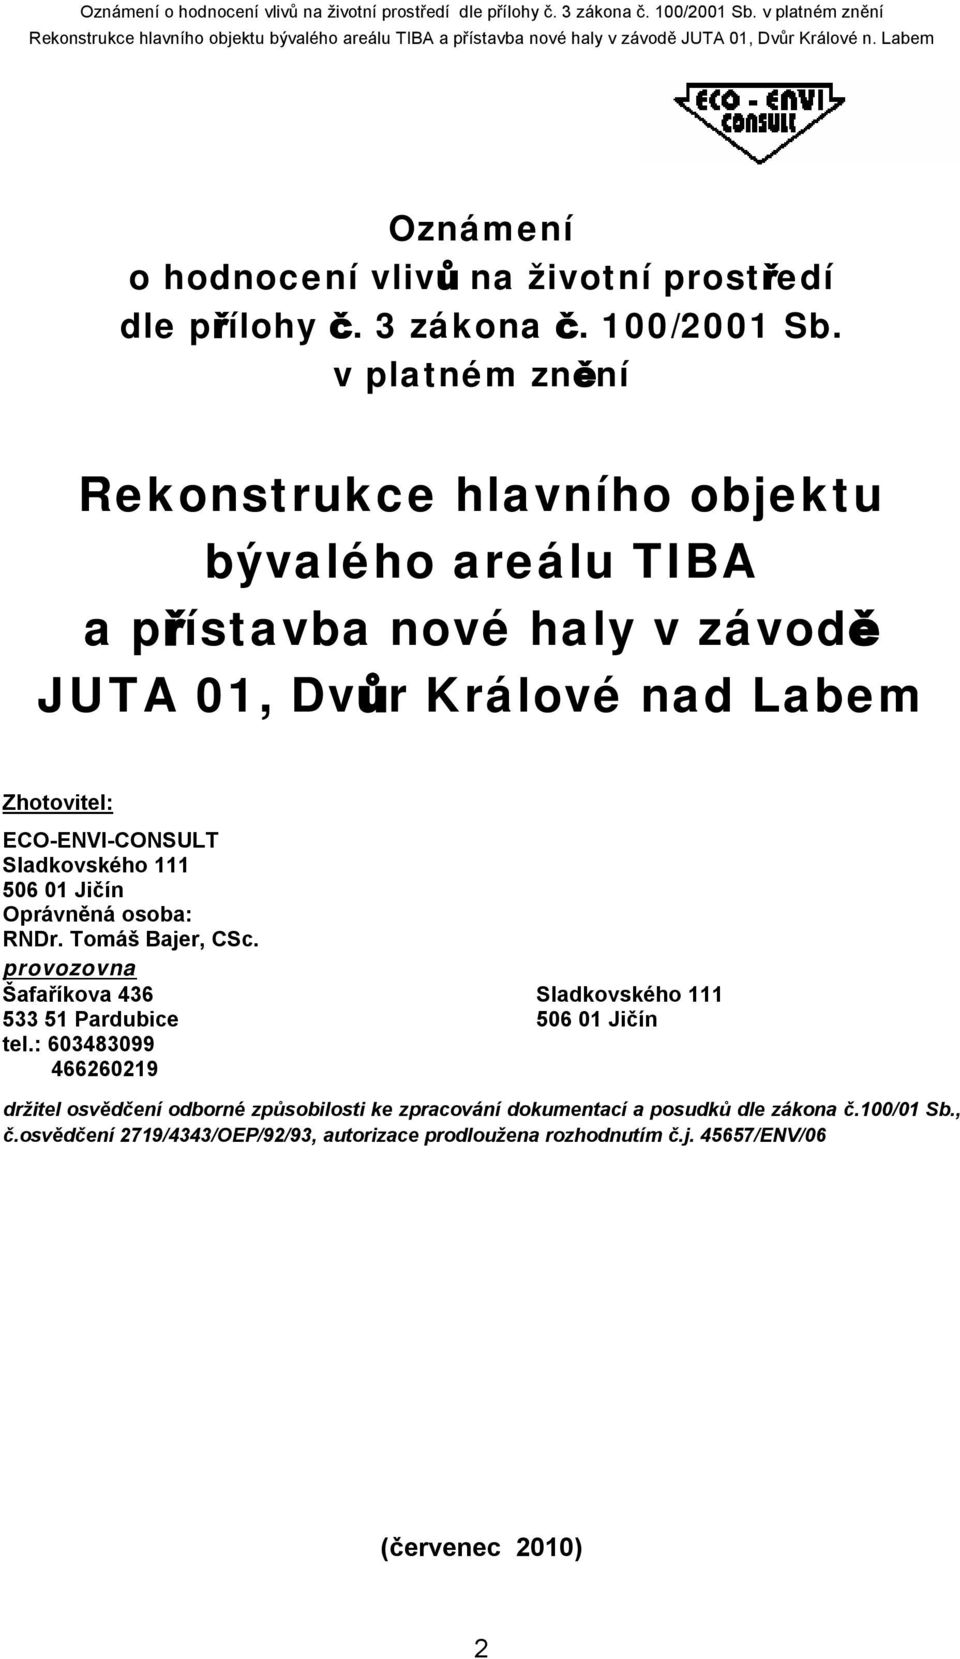 ECO-ENVI-CONSULT Sladkovského 111 506 01 Jičín Oprávněná osoba: RNDr. Tomáš Bajer, CSc.